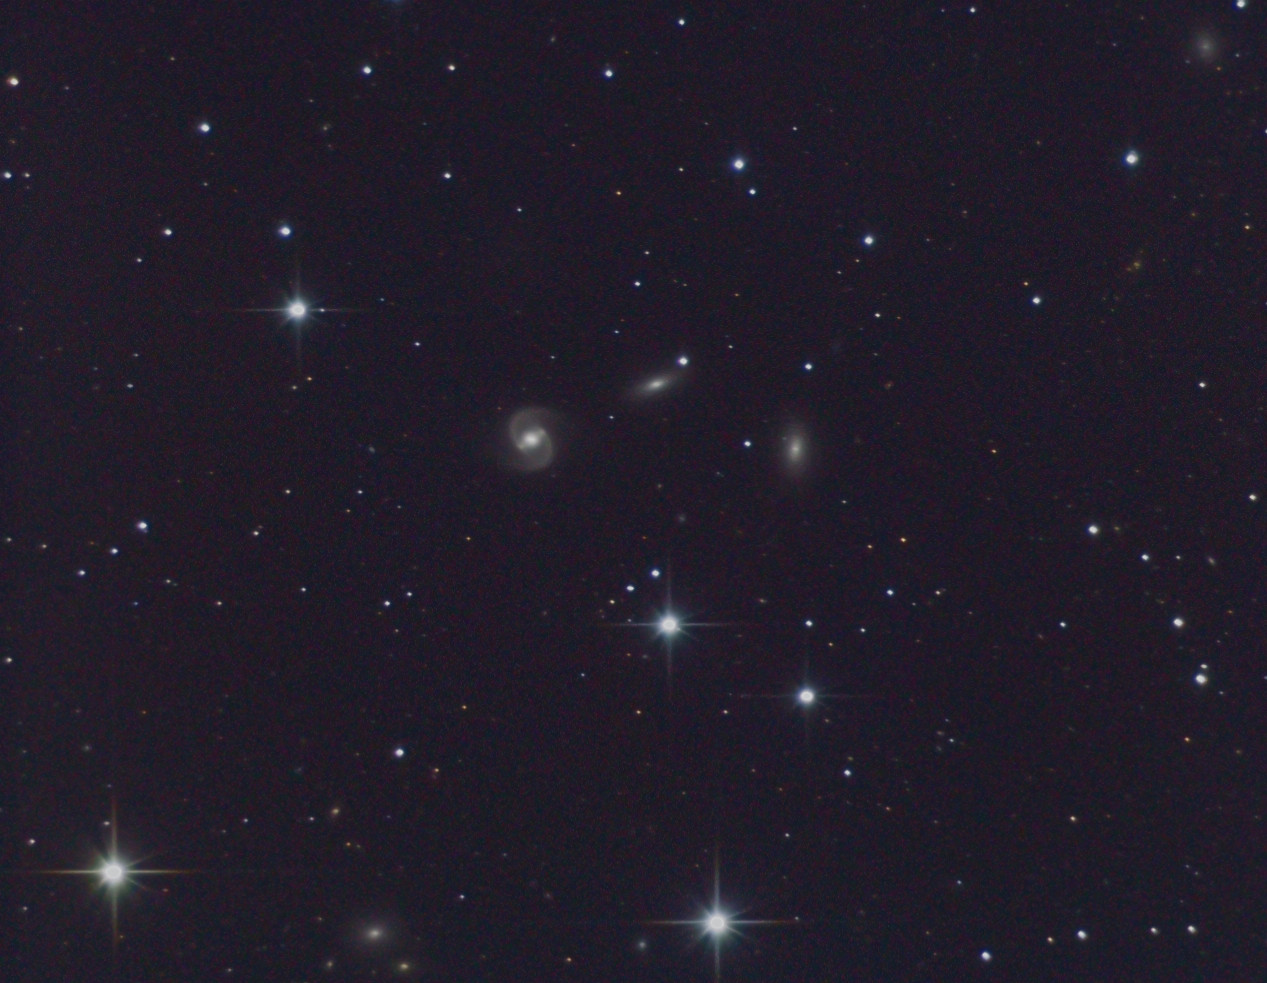 NGC 4440